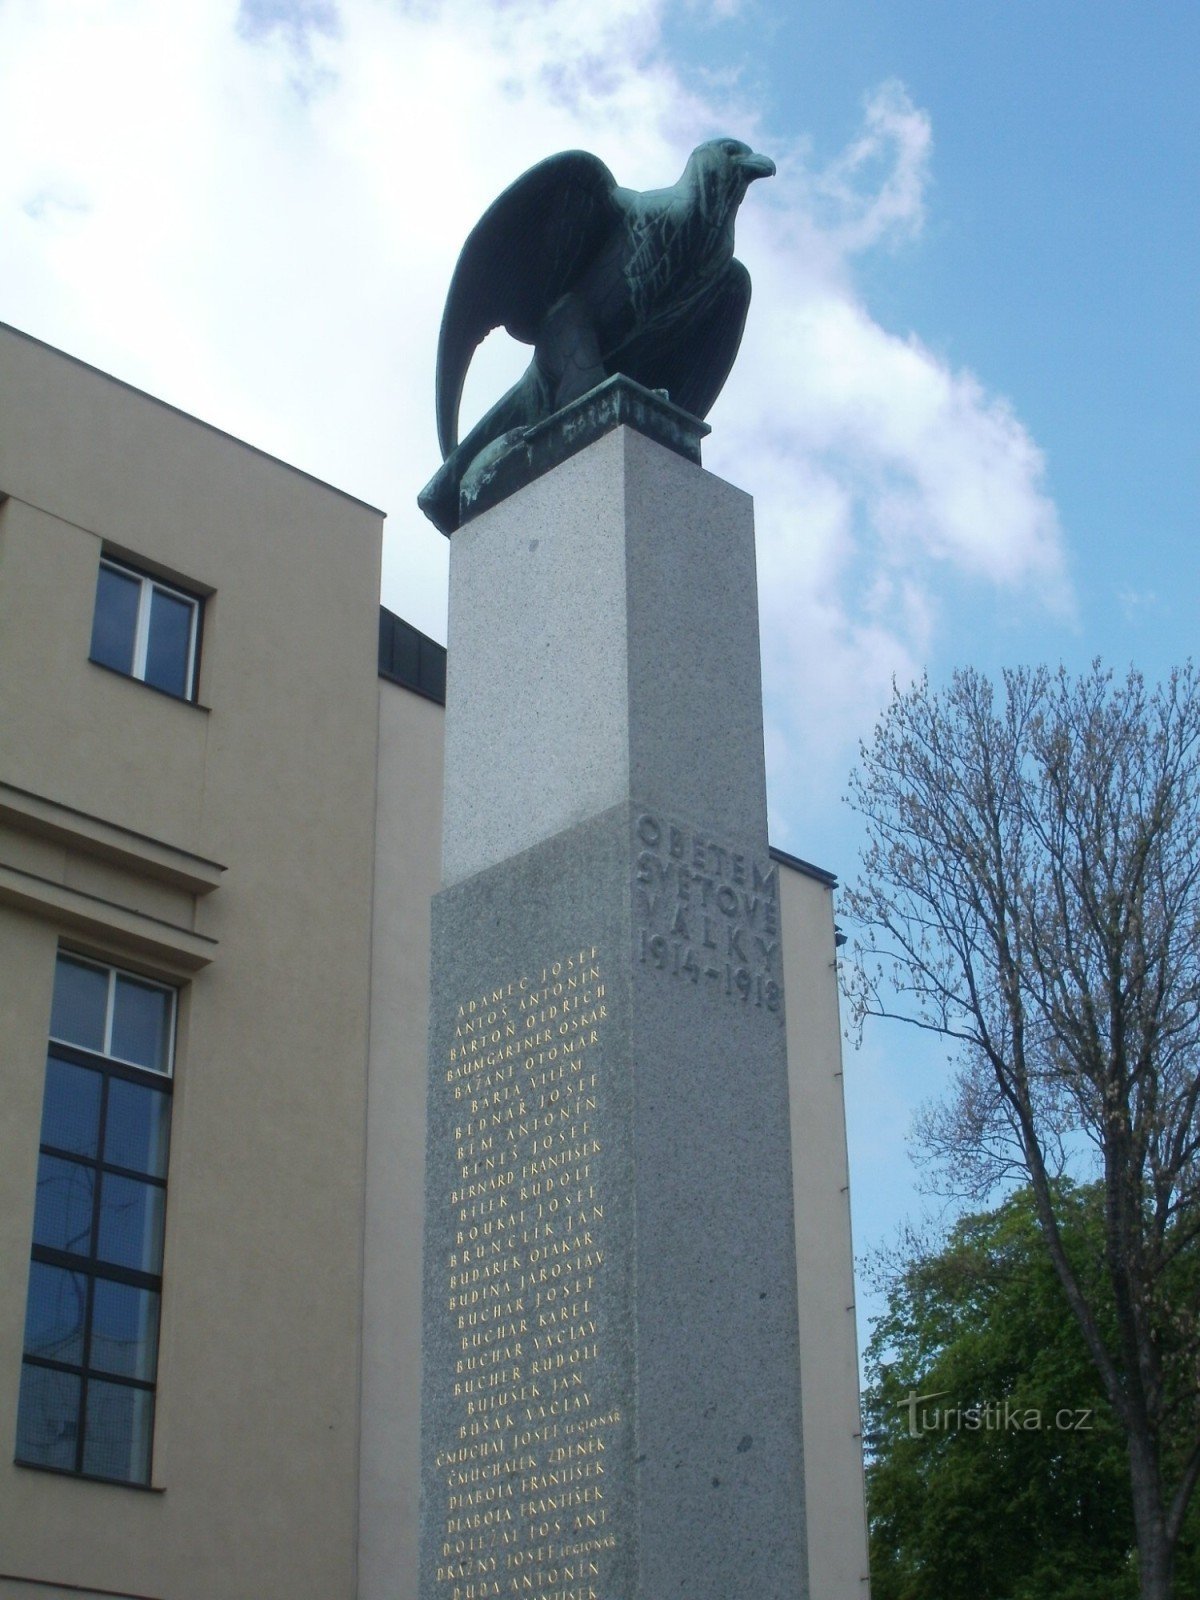 Йилемнице - памятник жертвам войн